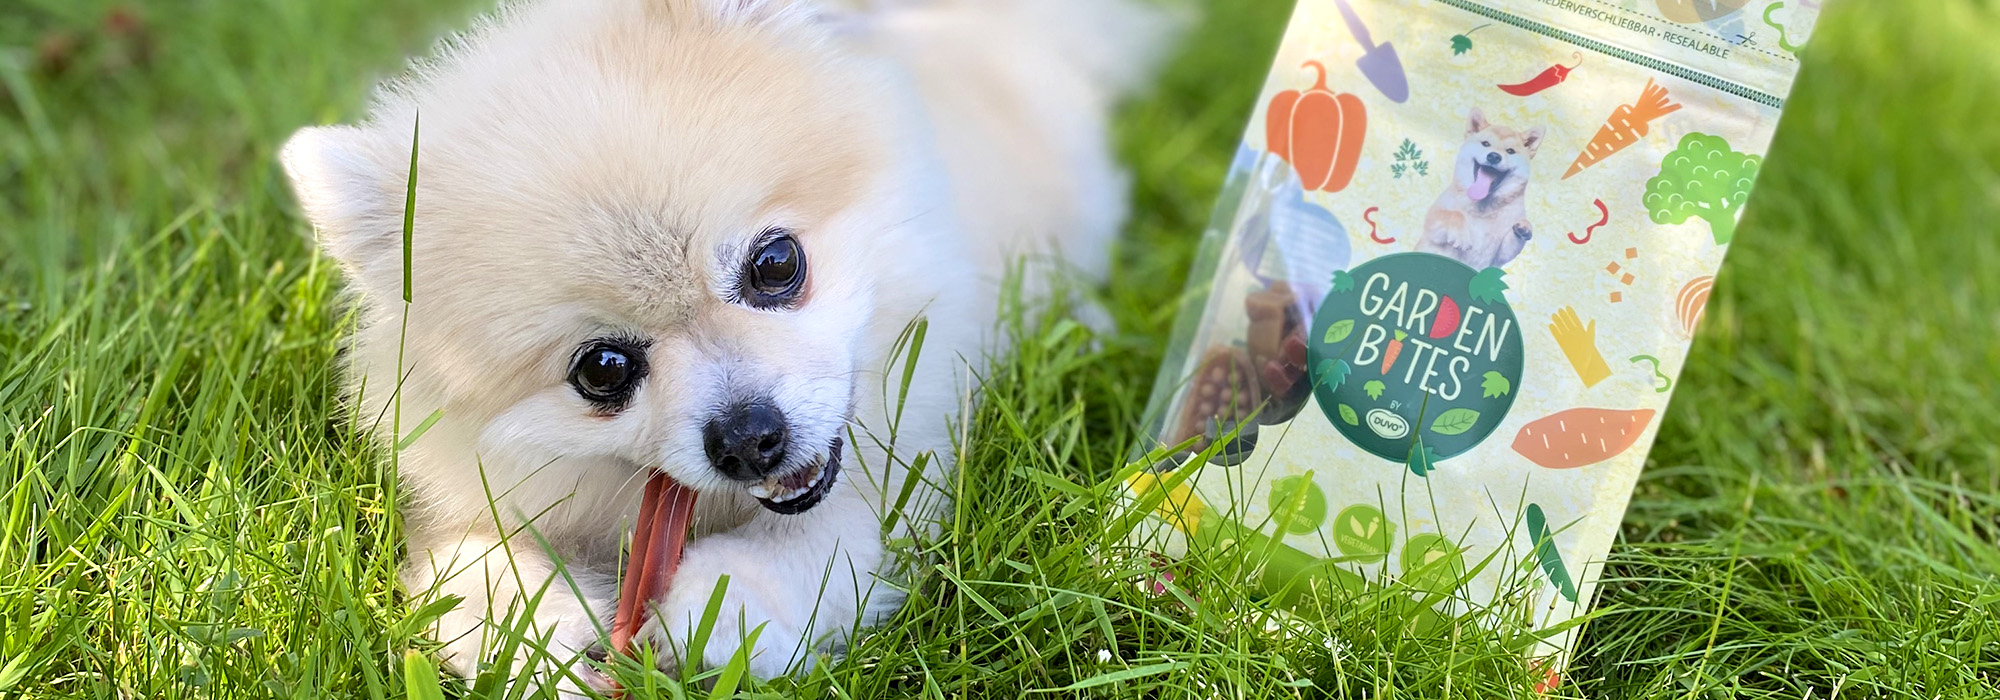 Un chien mange une collation végétarienne dans un jardin